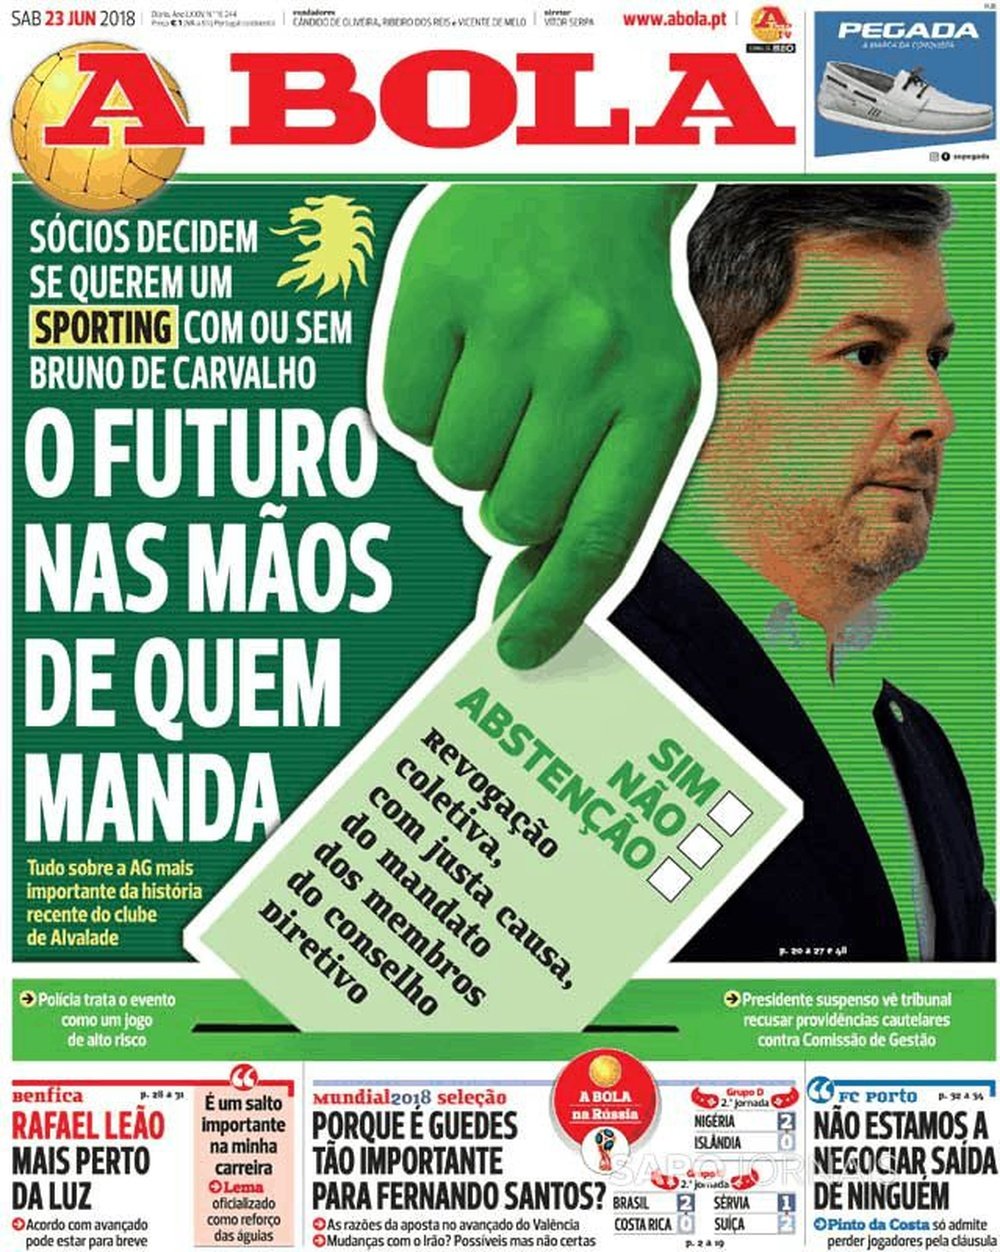 Capa do jornal A Bola de 23 de junho de 2018. ABola